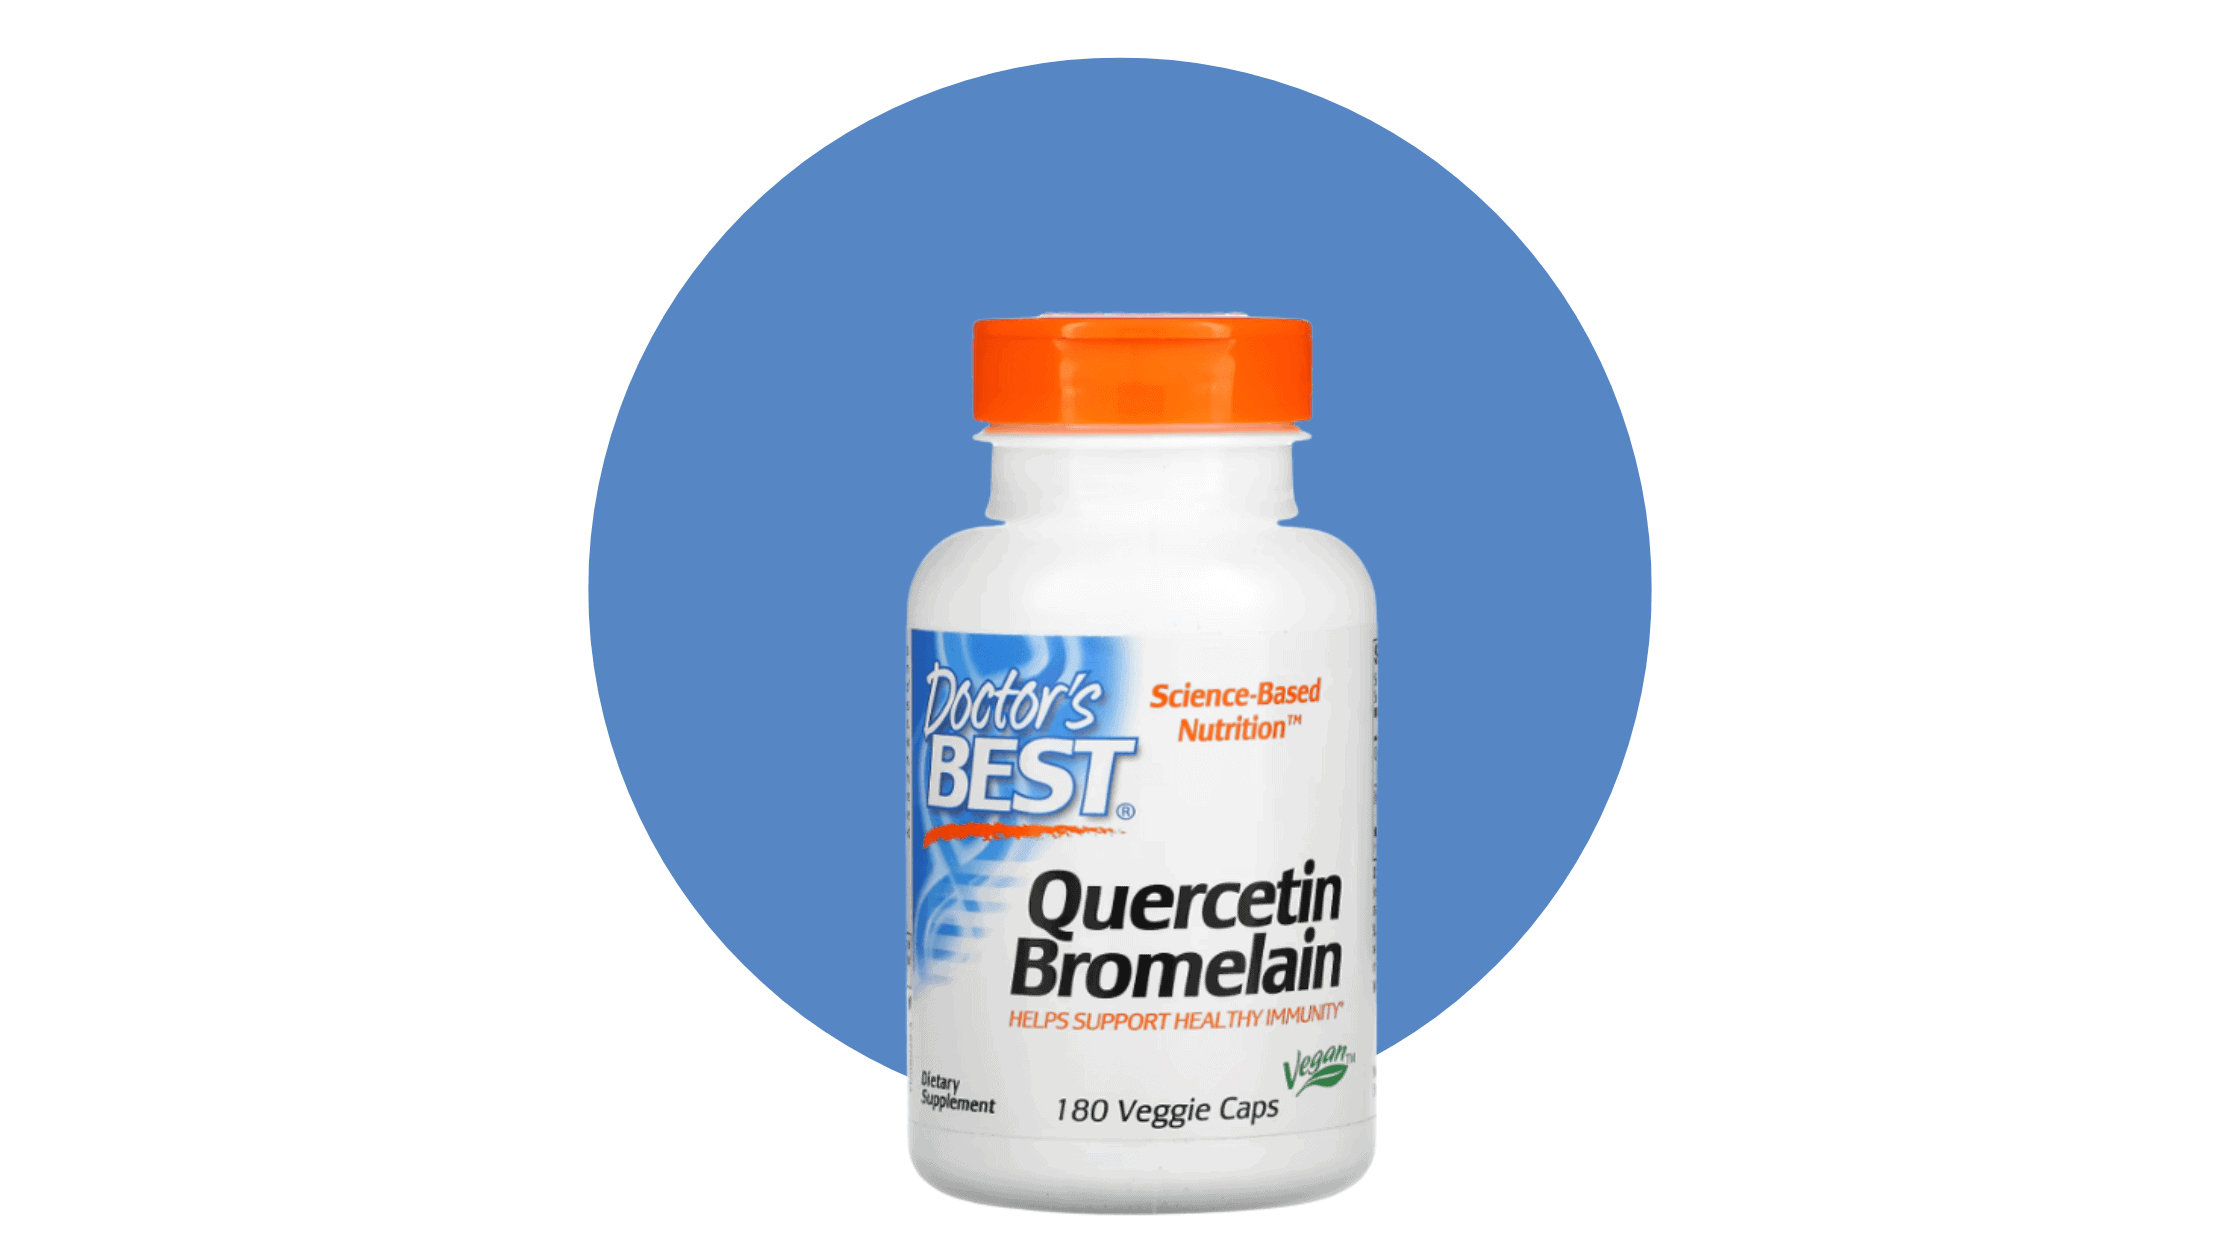 Doctor’s Best Quercetin supplement